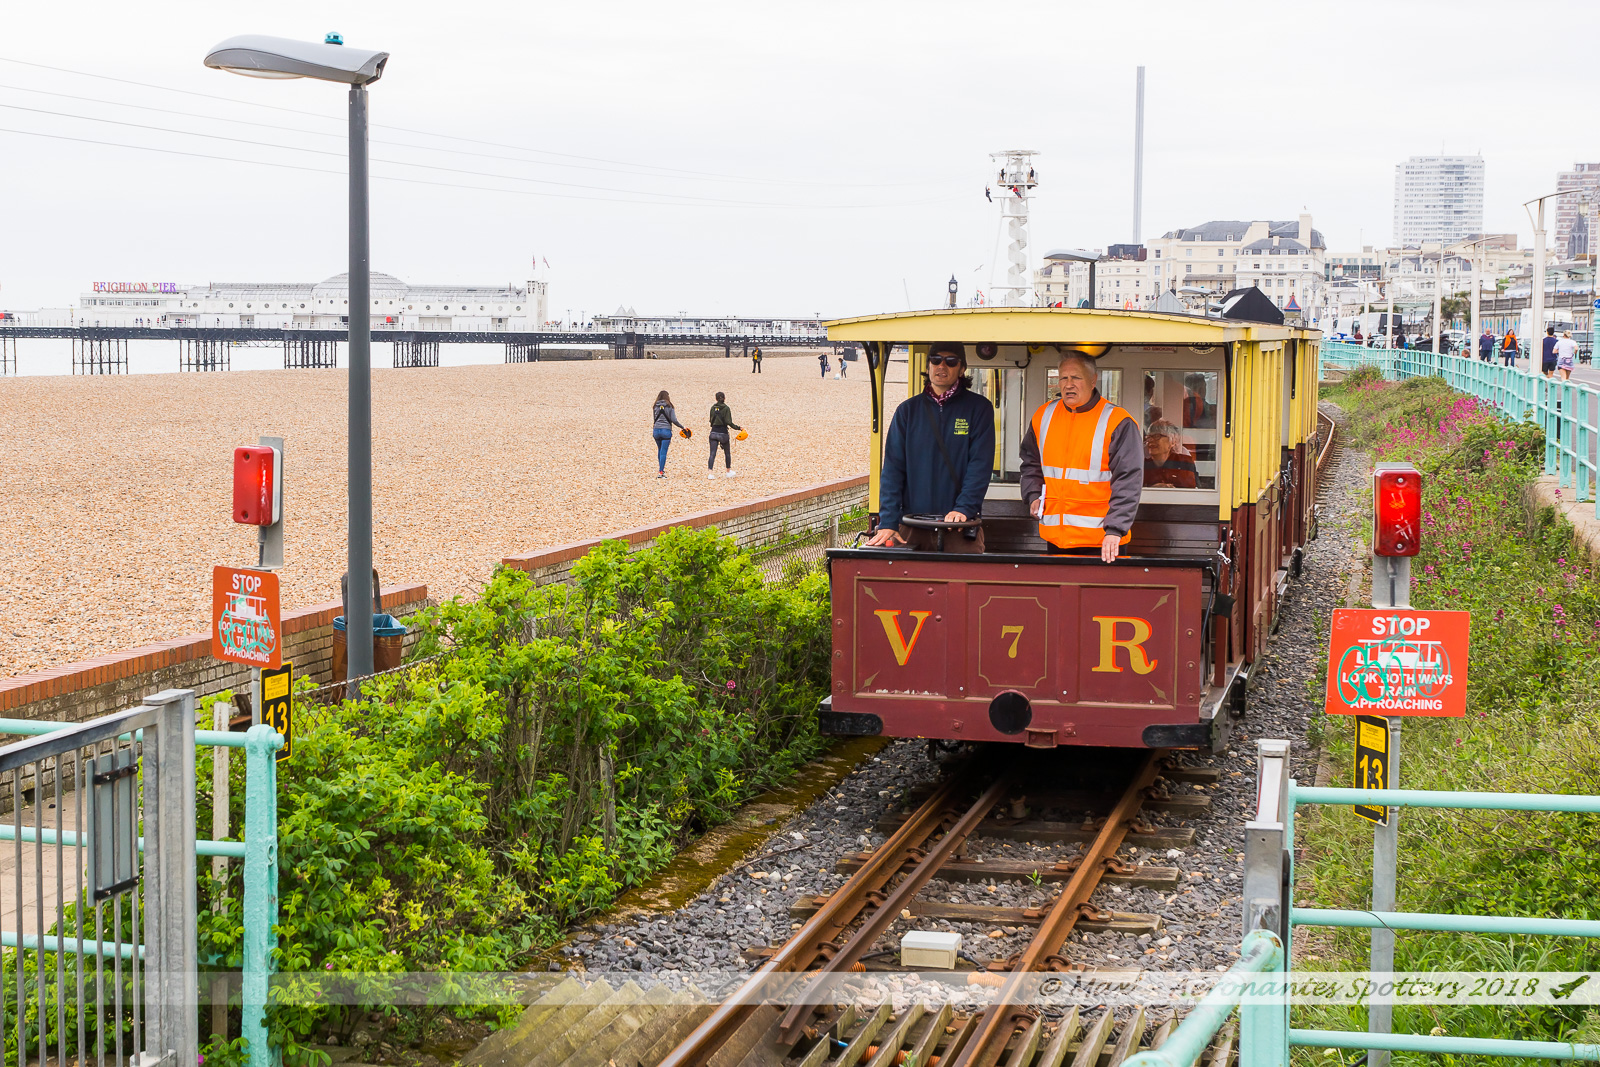 Le Volk's Electric Railway relie le Brighton Pier à la Marina. Construit en 1883, il est le plus vieux train électrique du Royaume-Uni